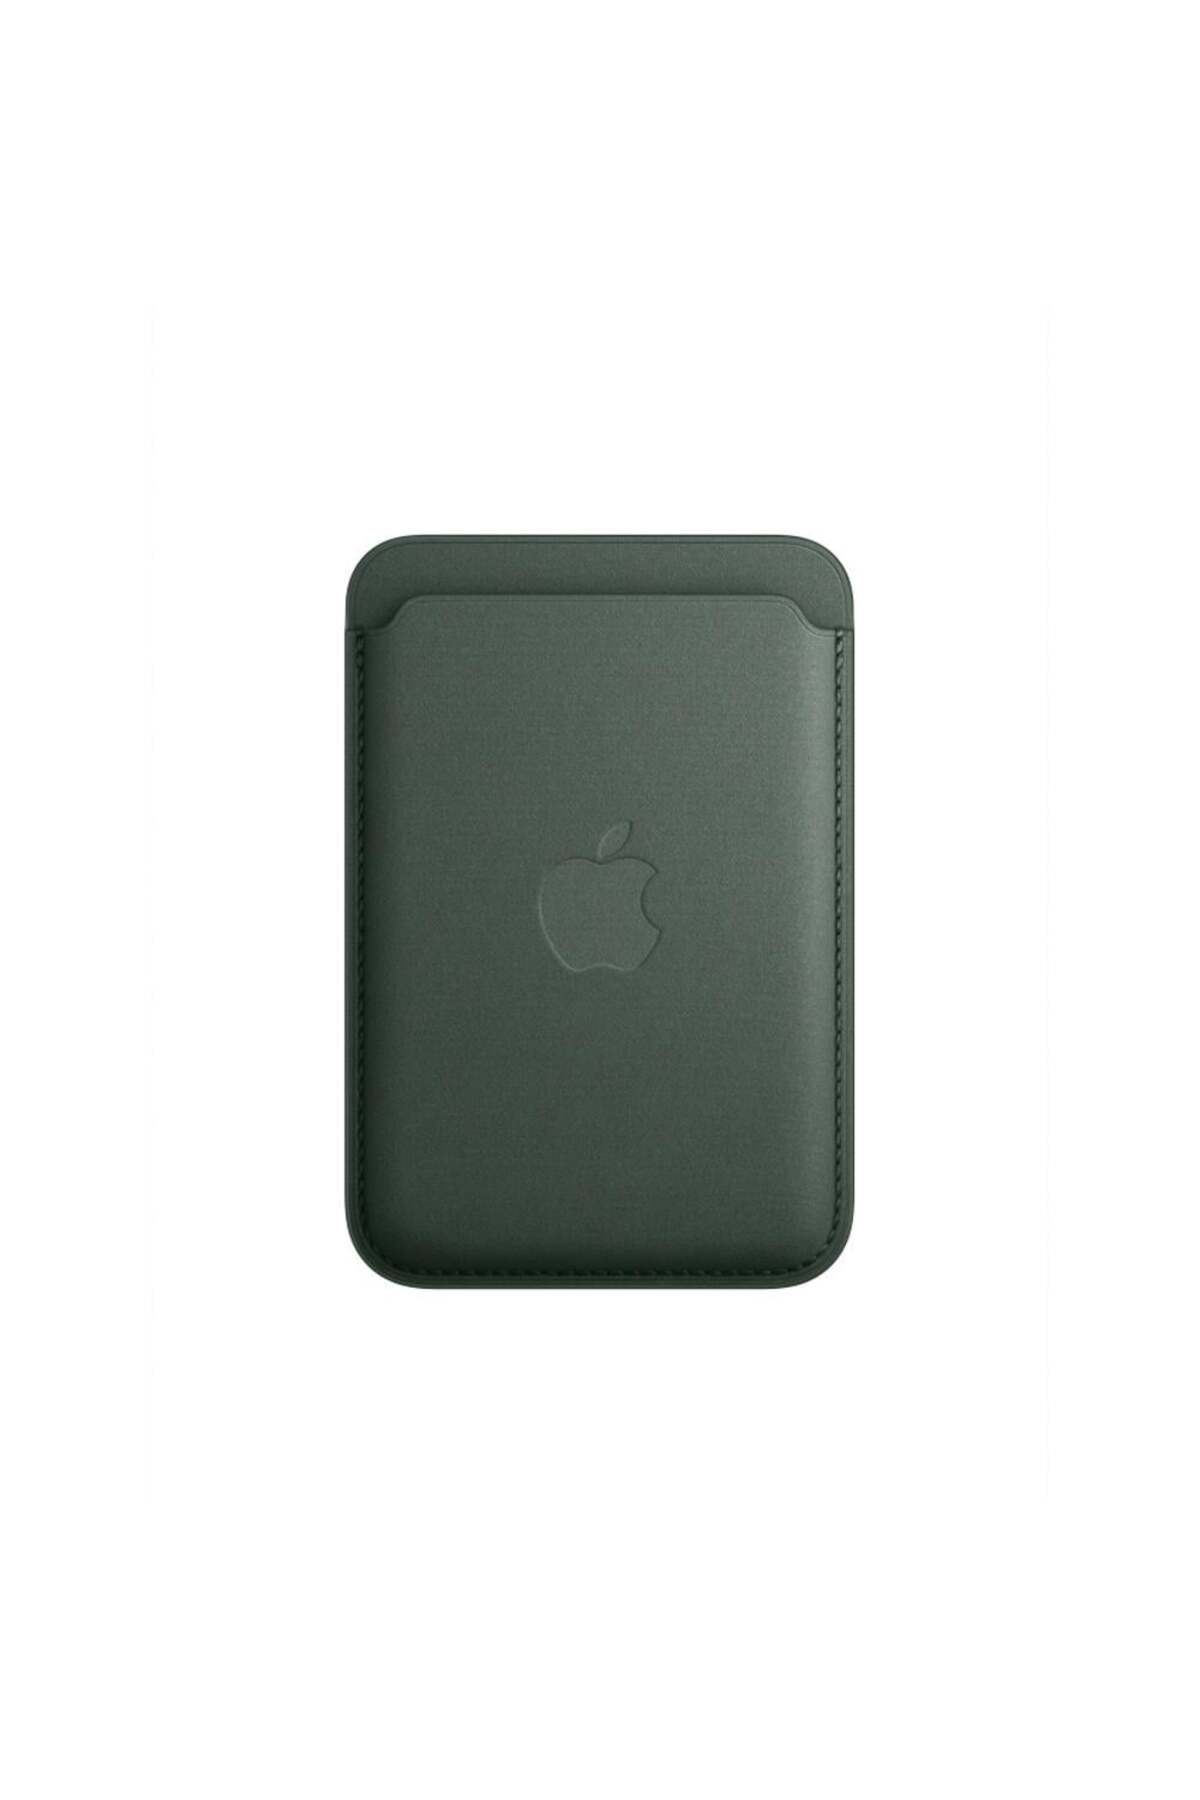 Apple MT273ZM/A iPhone için Uyumlu MagSafe özellikli Mikro Dokuma Cüzdan -Kermes Meşesi